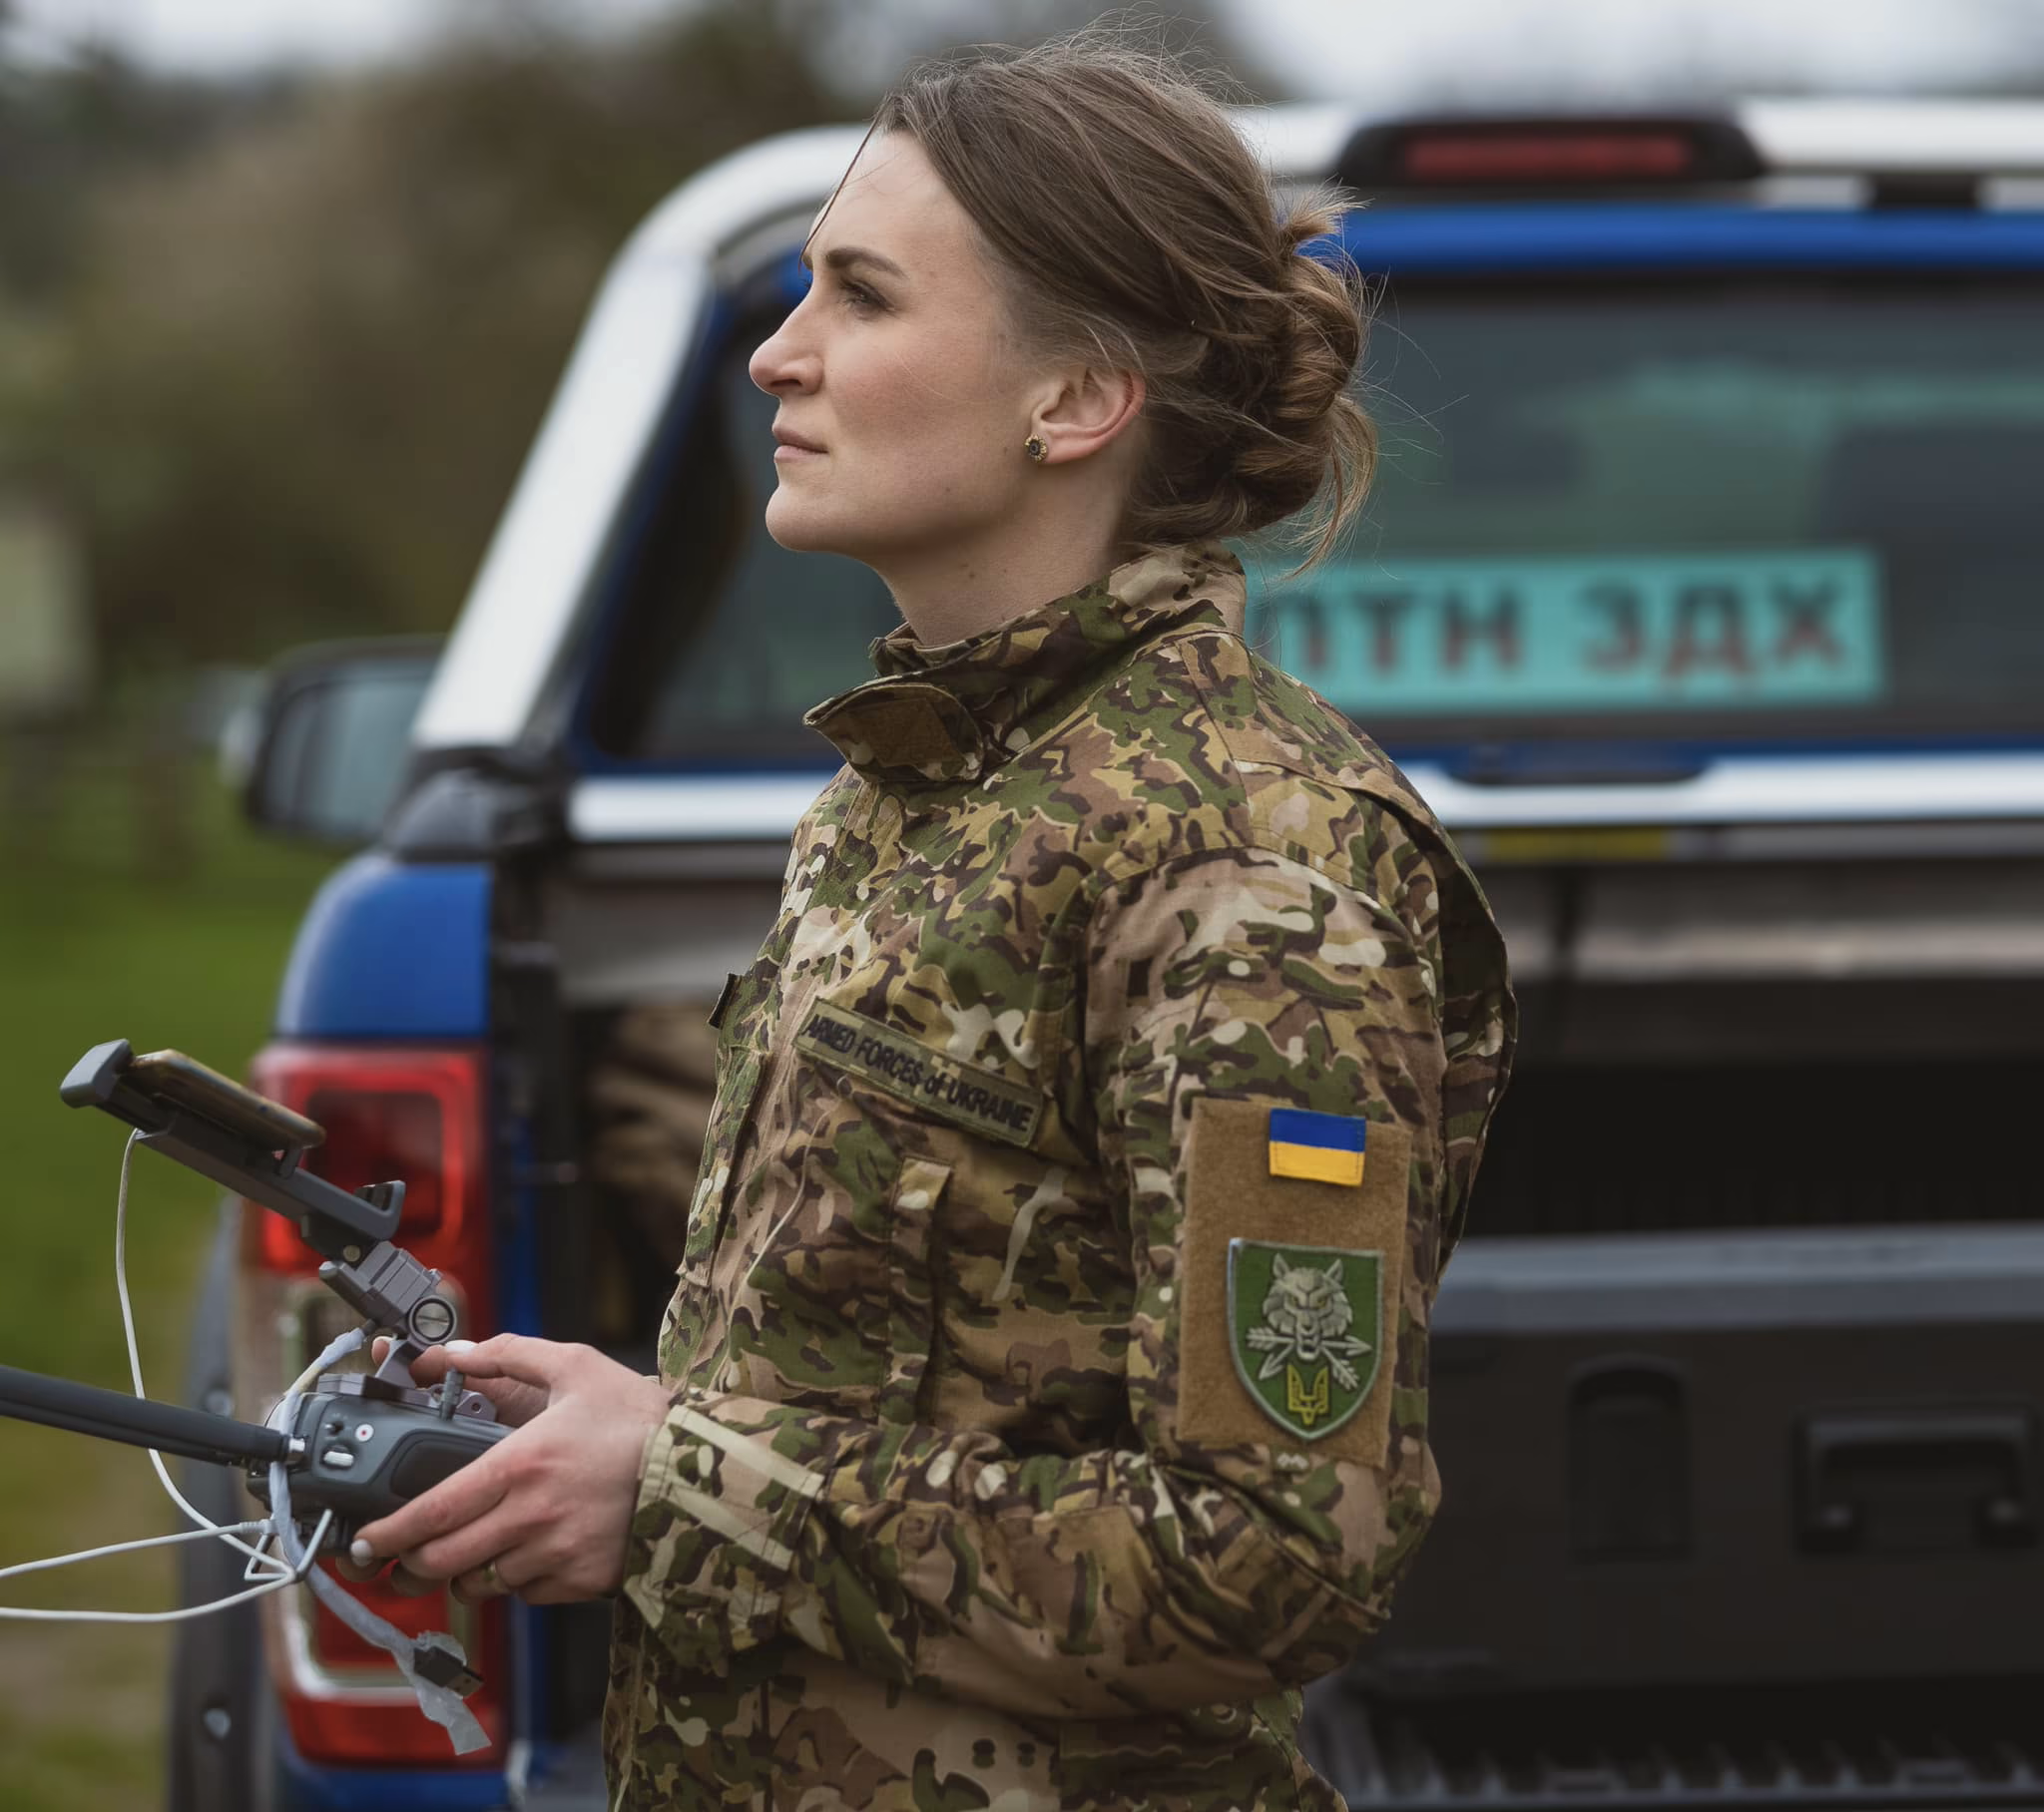 Соломія Боброська є резервісткою Сил спеціальних операцій